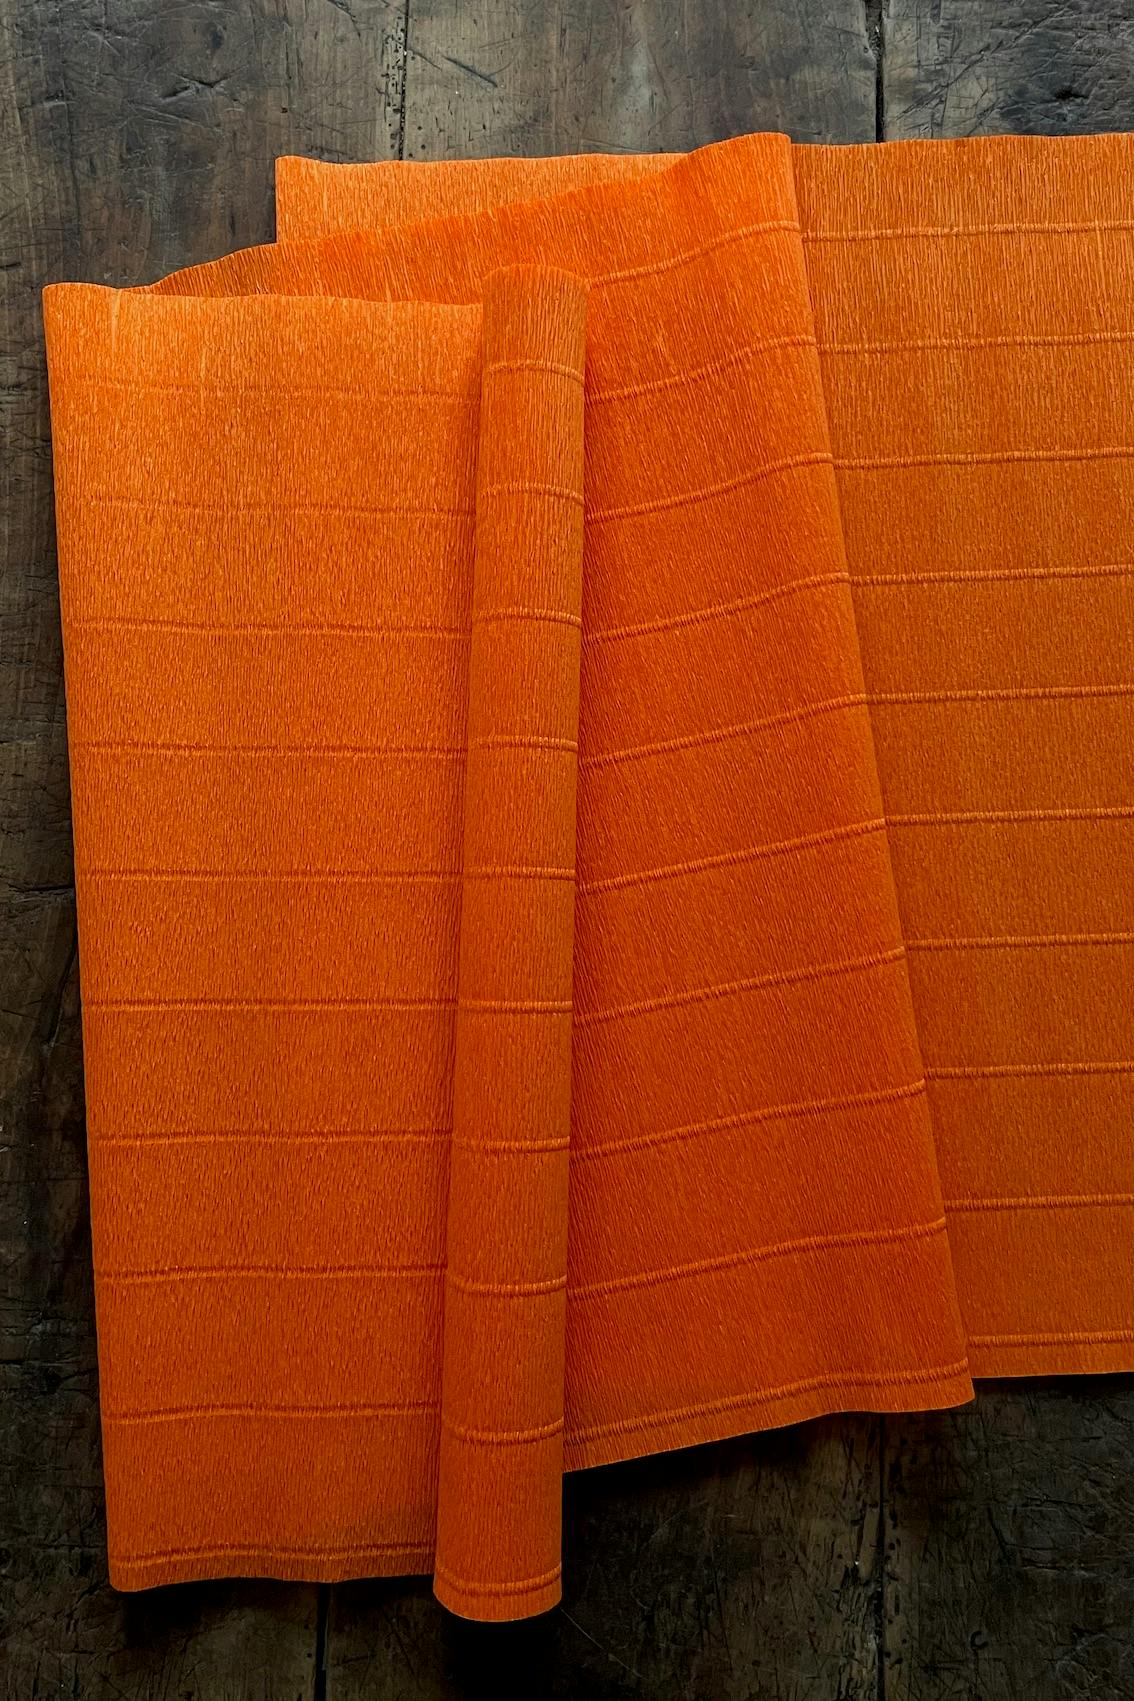 Kräppapper 180 g i nyansen ljus orange (20E2) från Ljuva Drömmar.